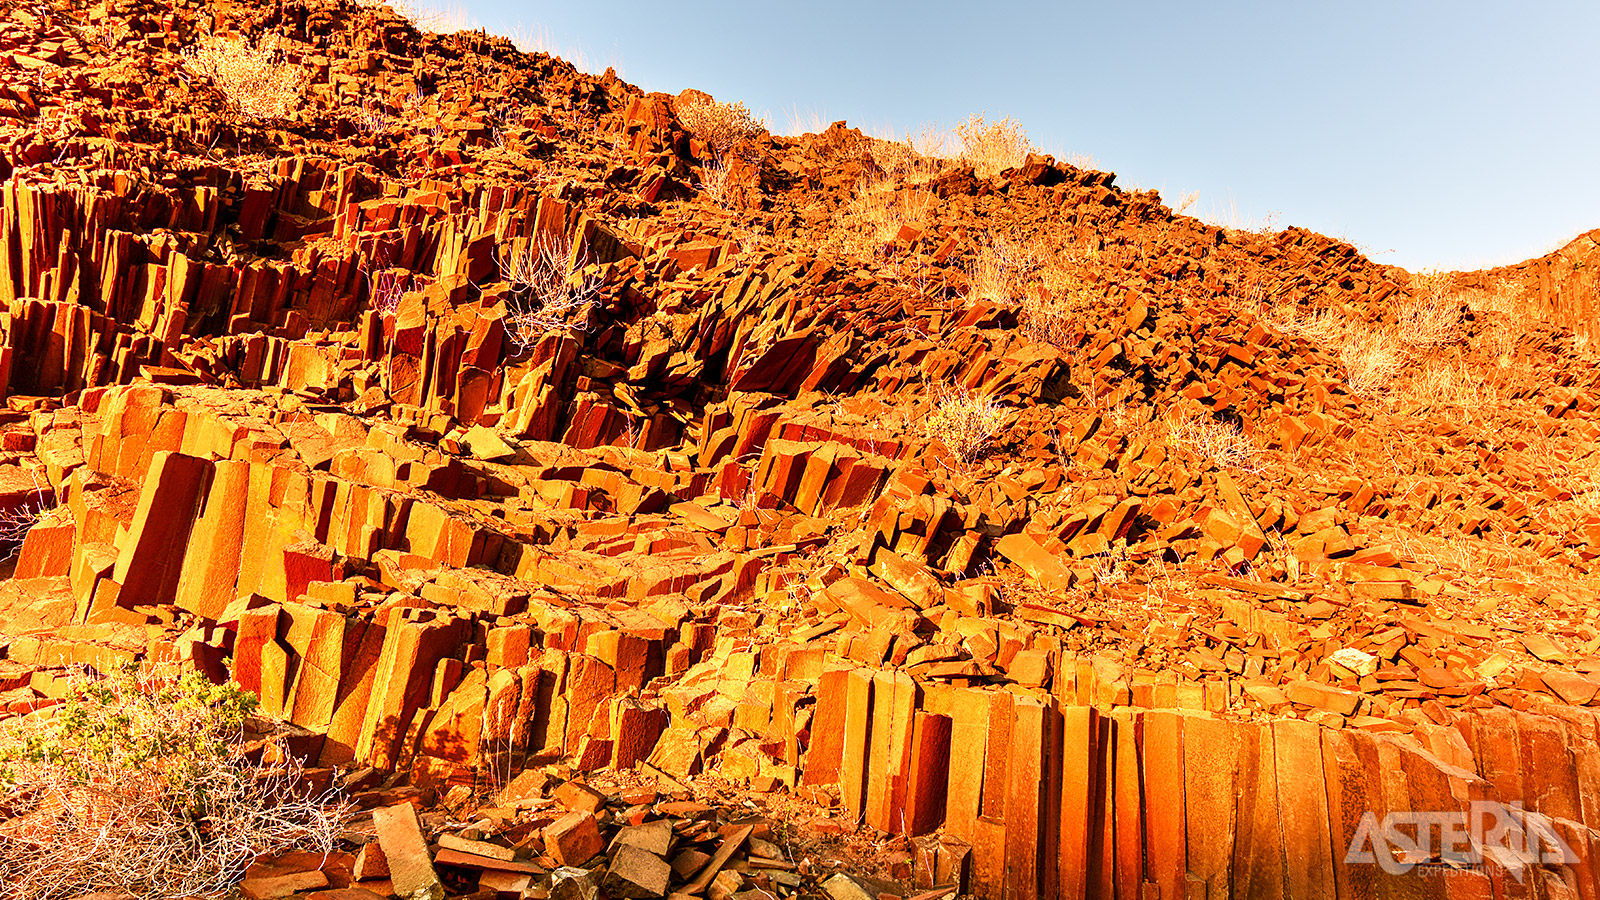 Organ Pipes bij Twyfelfonteineen, een geologische rotsformatie van 100m met talloze zeshoekige rotspijlers in oranje, bruine en gele tinten